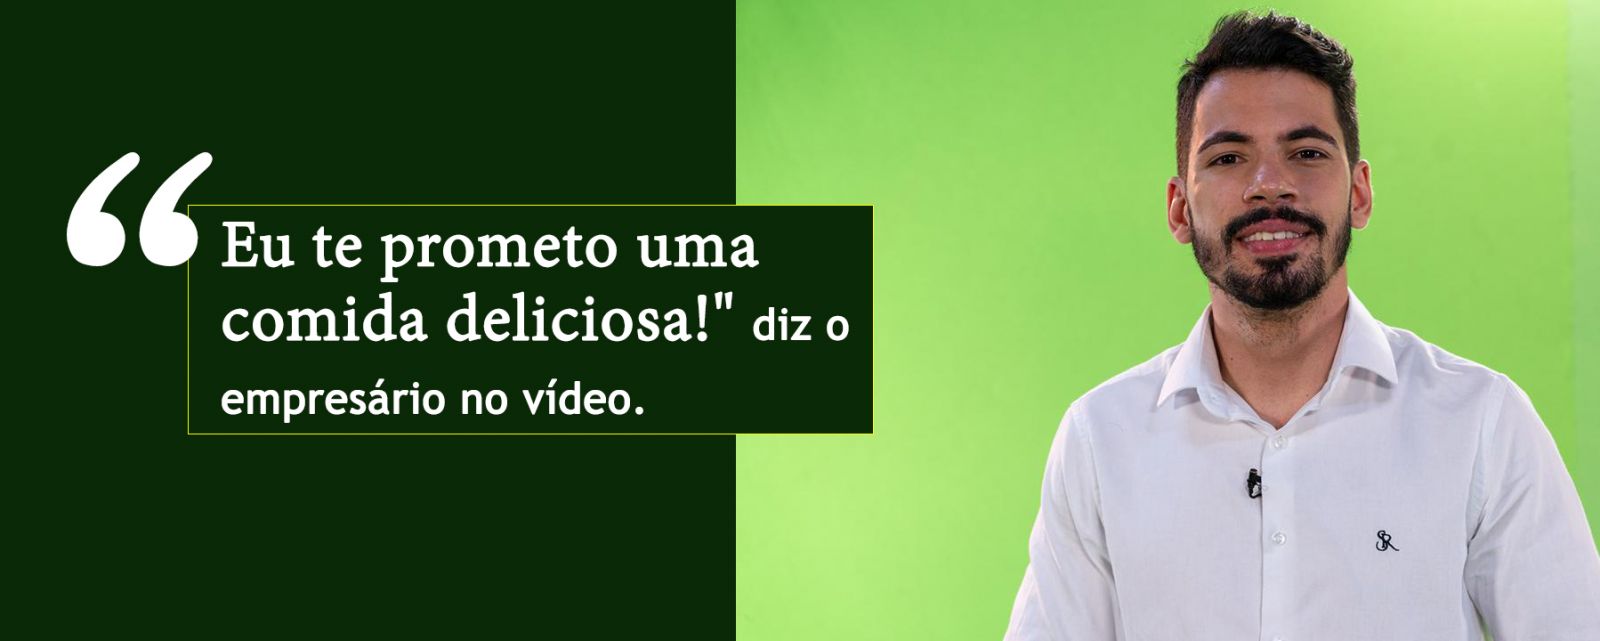 Empresário viraliza ao candidatar seus pratos na política - News Rondônia